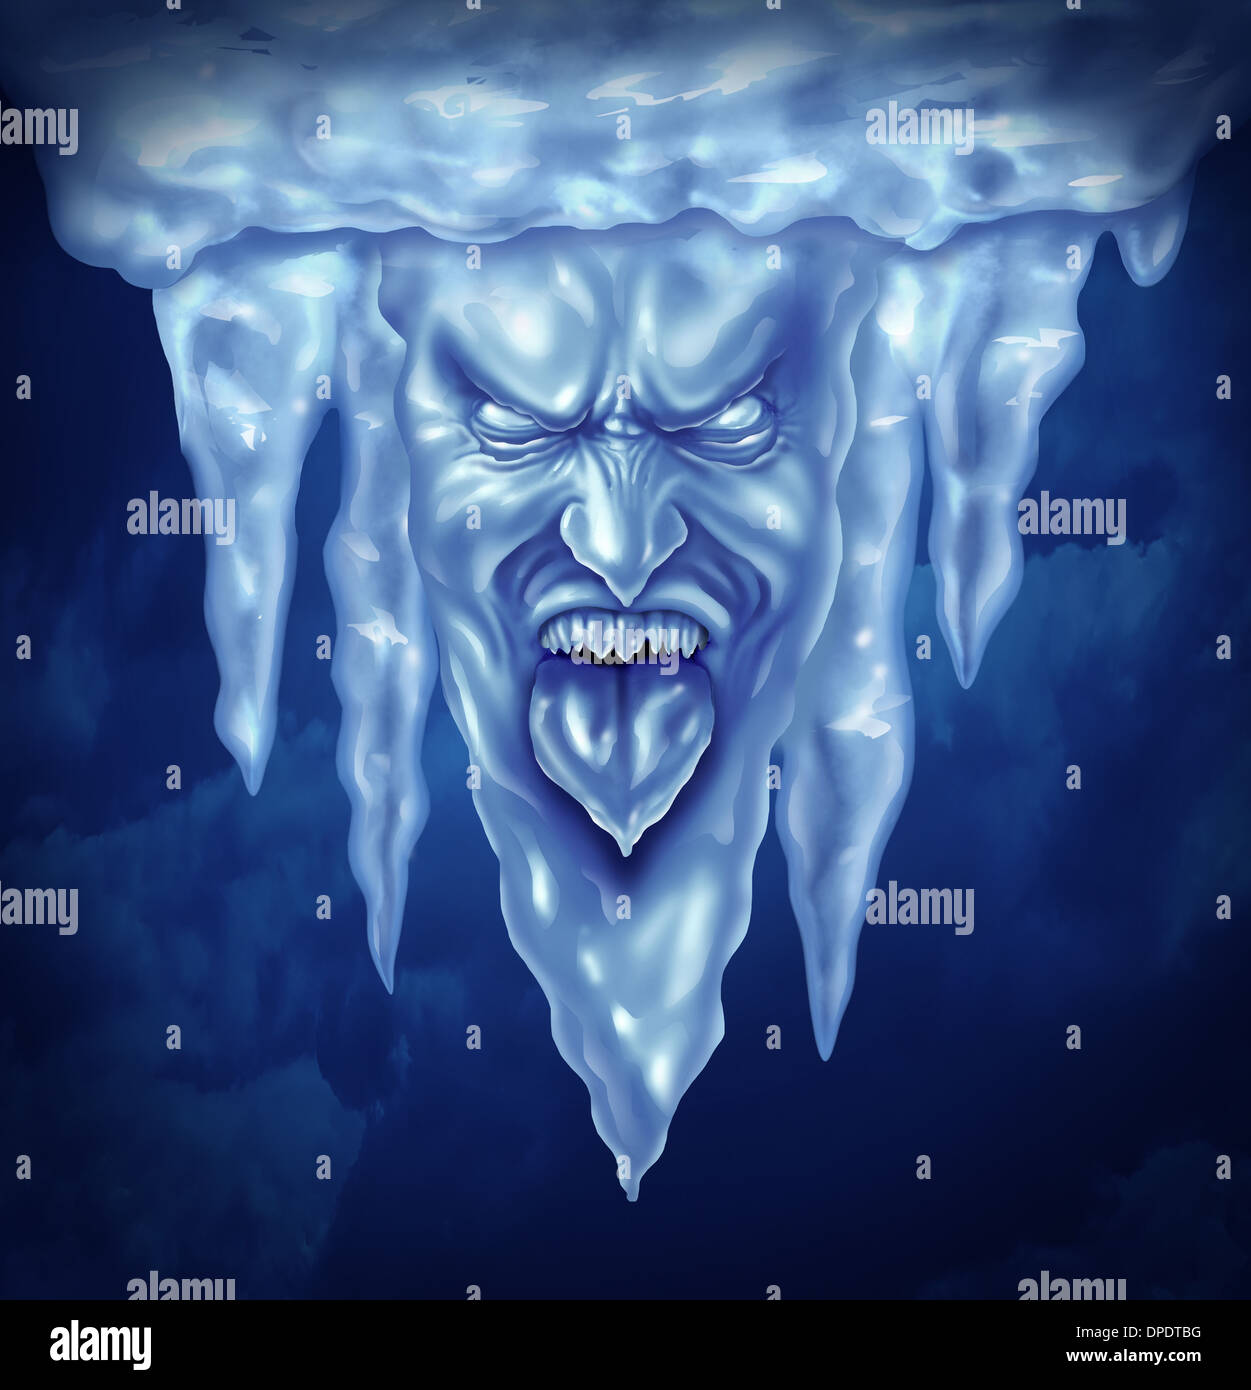 Deep Freeze und extreme Kälte Konzept als eine Gruppe von Eiszapfen in der Form eines intensiven gefrorenen menschlichen Ausdrucks aus Eis als eine Metapher für Winter Minustemperaturen. Stockfoto